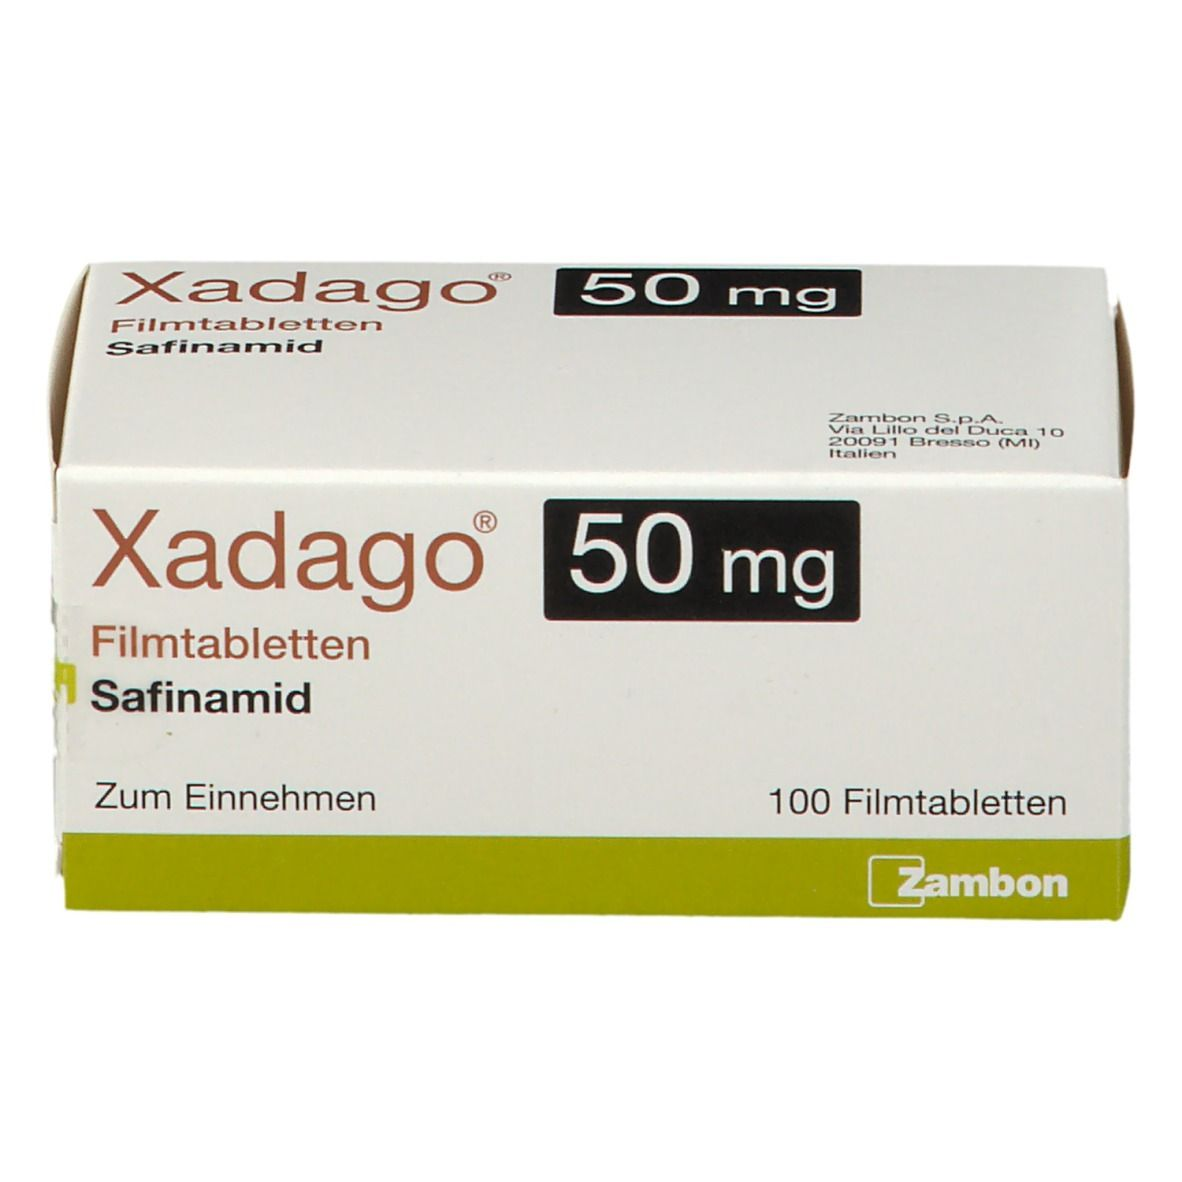 Xadago 50mg giúp cải thiện hiệu quả chứng rối loạn vận động ở người bệnh Parkinson giai đoạn nặng 